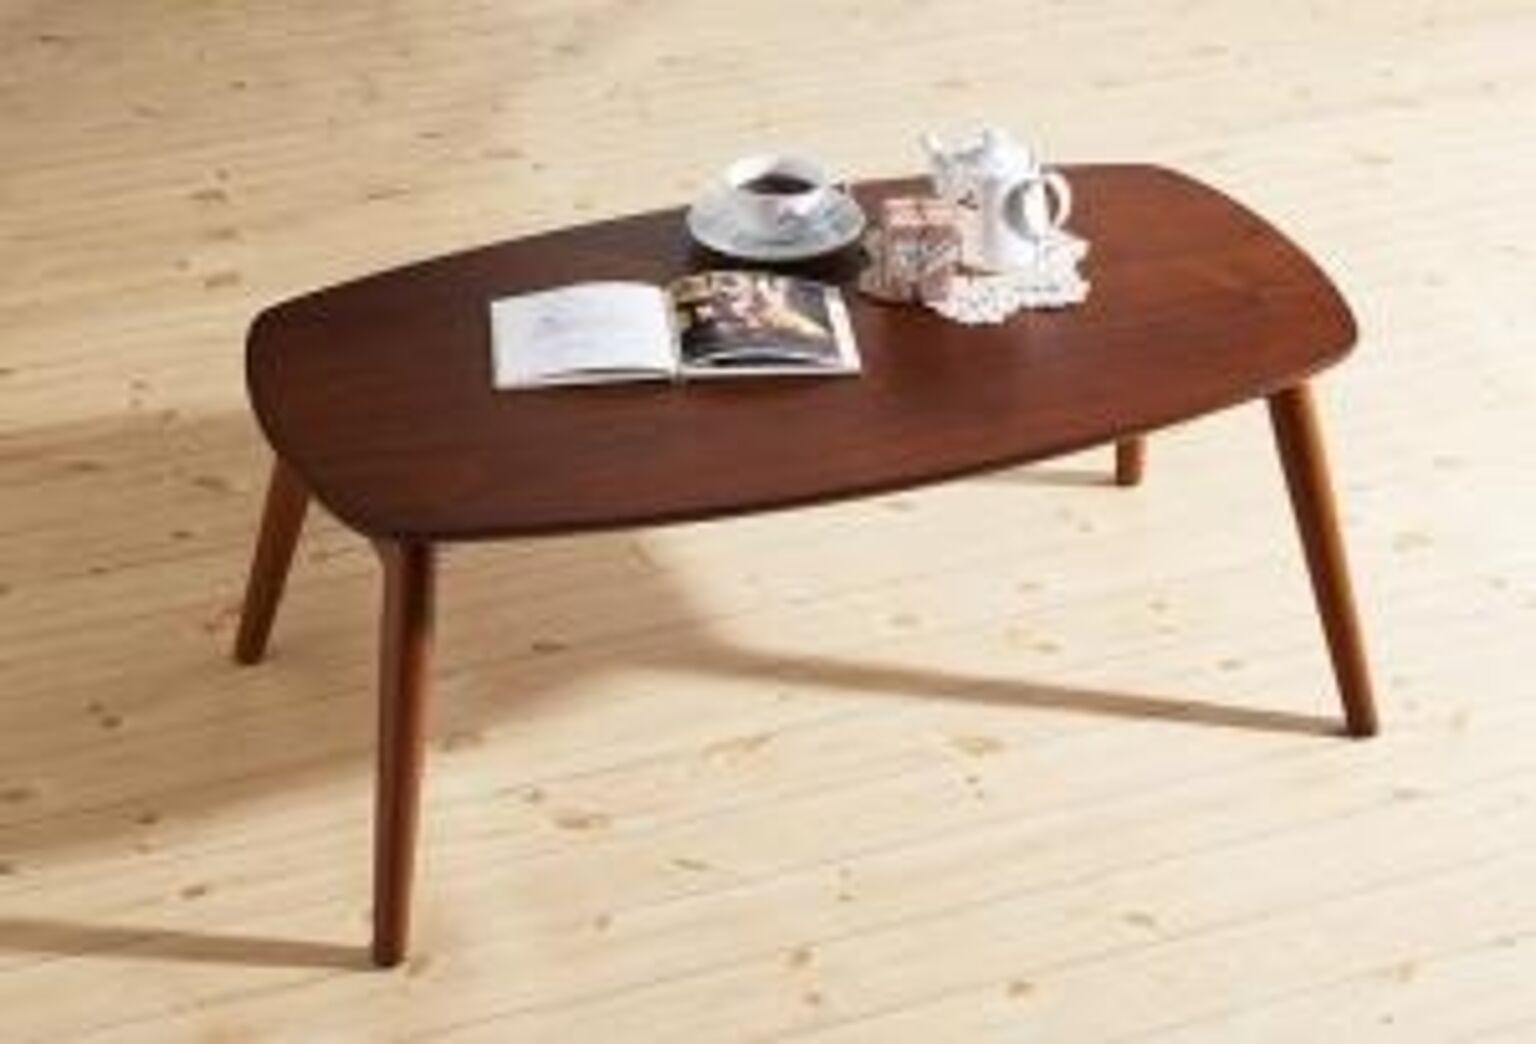 ウォールナット北欧デザイン ローテーブルシリーズ remot. レモット ローテーブル 北欧風 レトロ 完成品 折りたたみテーブル アンティーク風 折畳テーブル センターテーブル テーブル 